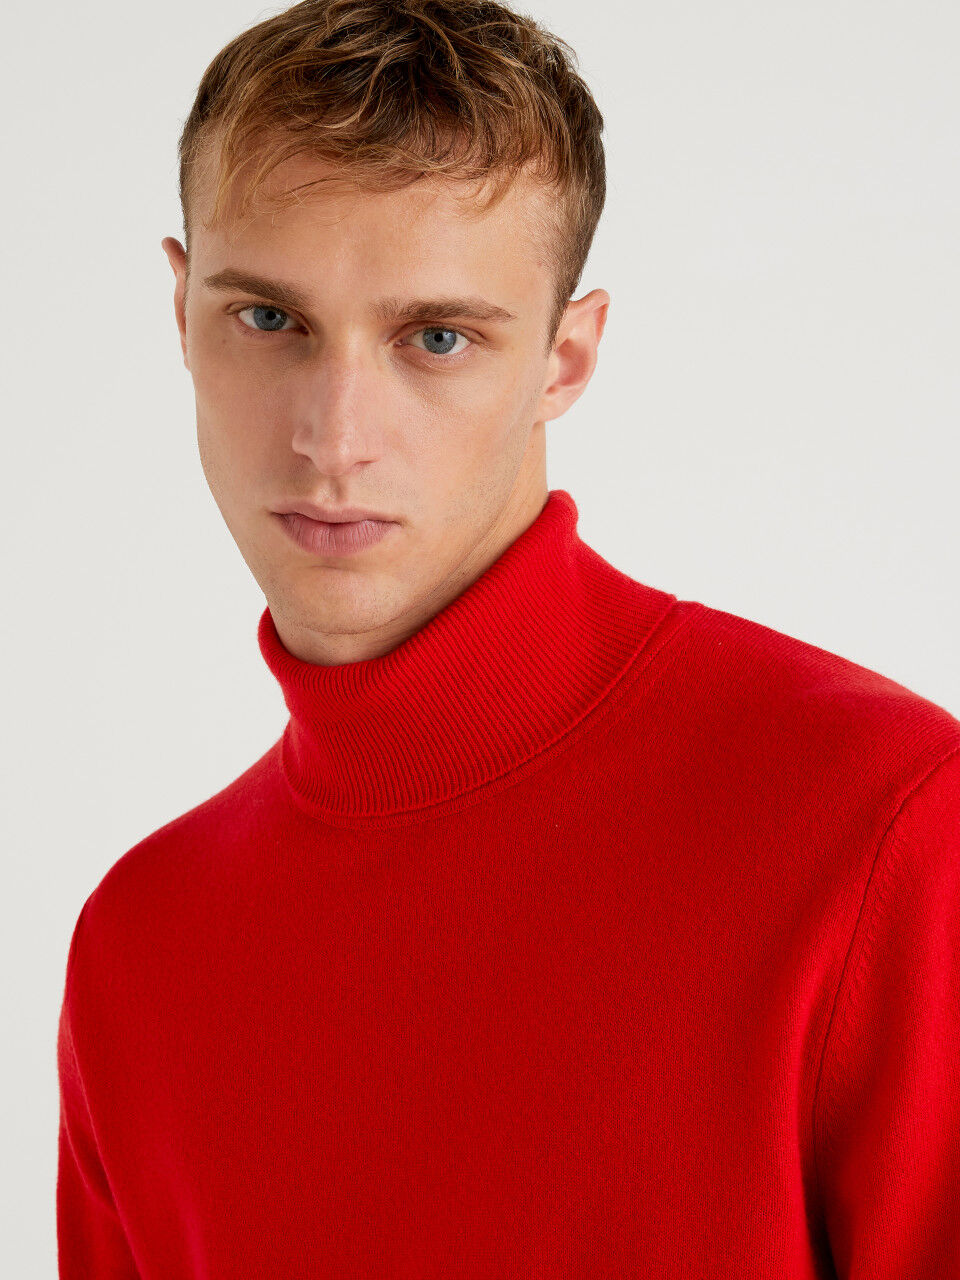 Jersey de cuello alto rojo de pura lana Merina personalizable